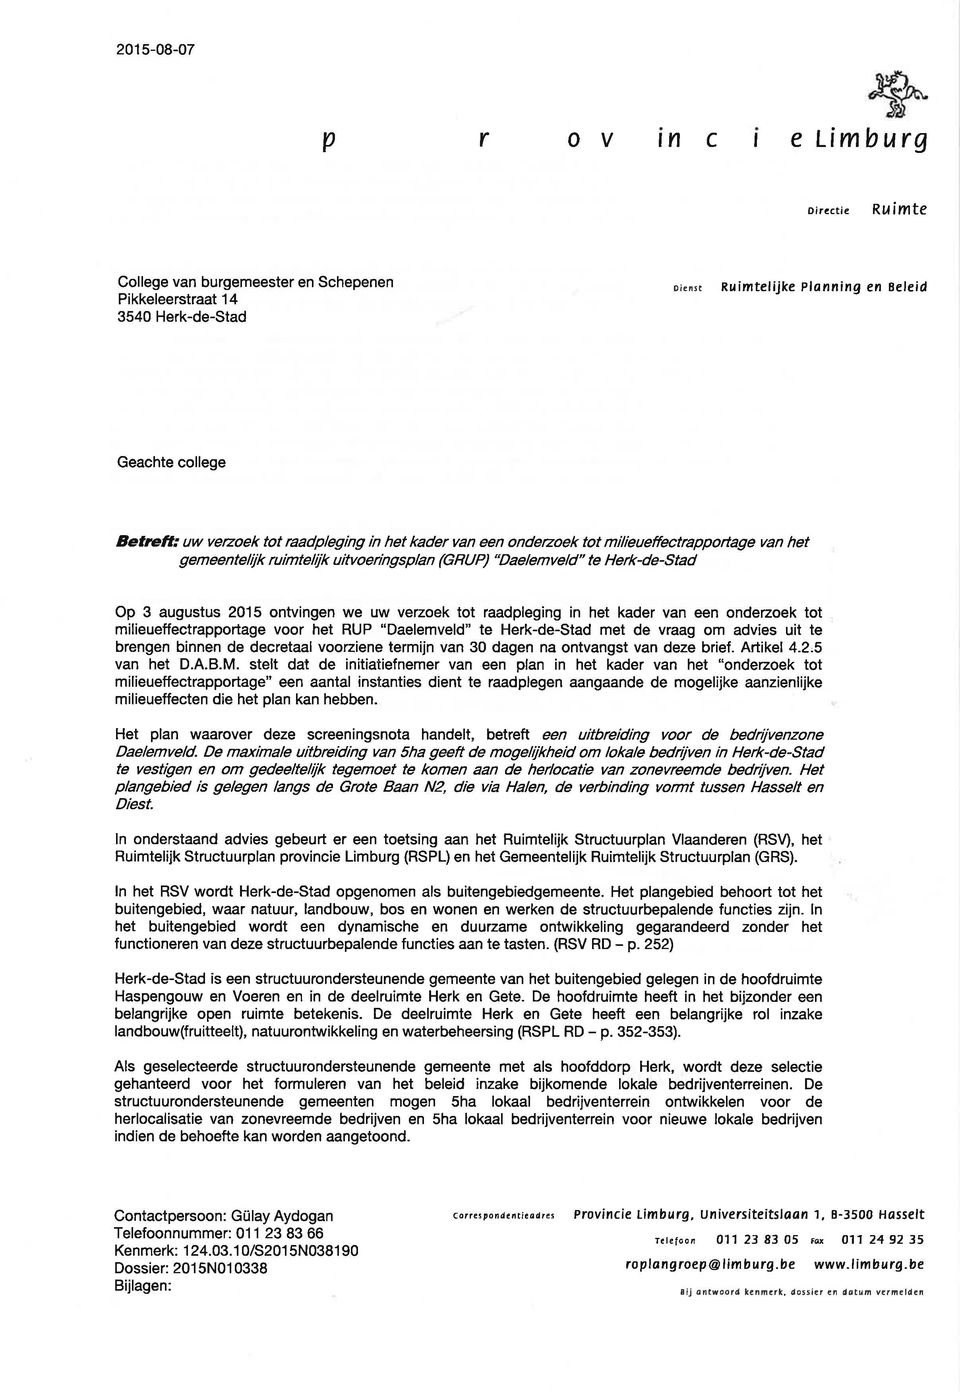 uw verzoek tot raadpleging in het kader van een ondezoek tot milieueffectrapportage voor het RUP "Daelemveld" te Herk-de-Stad met de vraag om advies uit te brengen binnen de decretaal voorziene